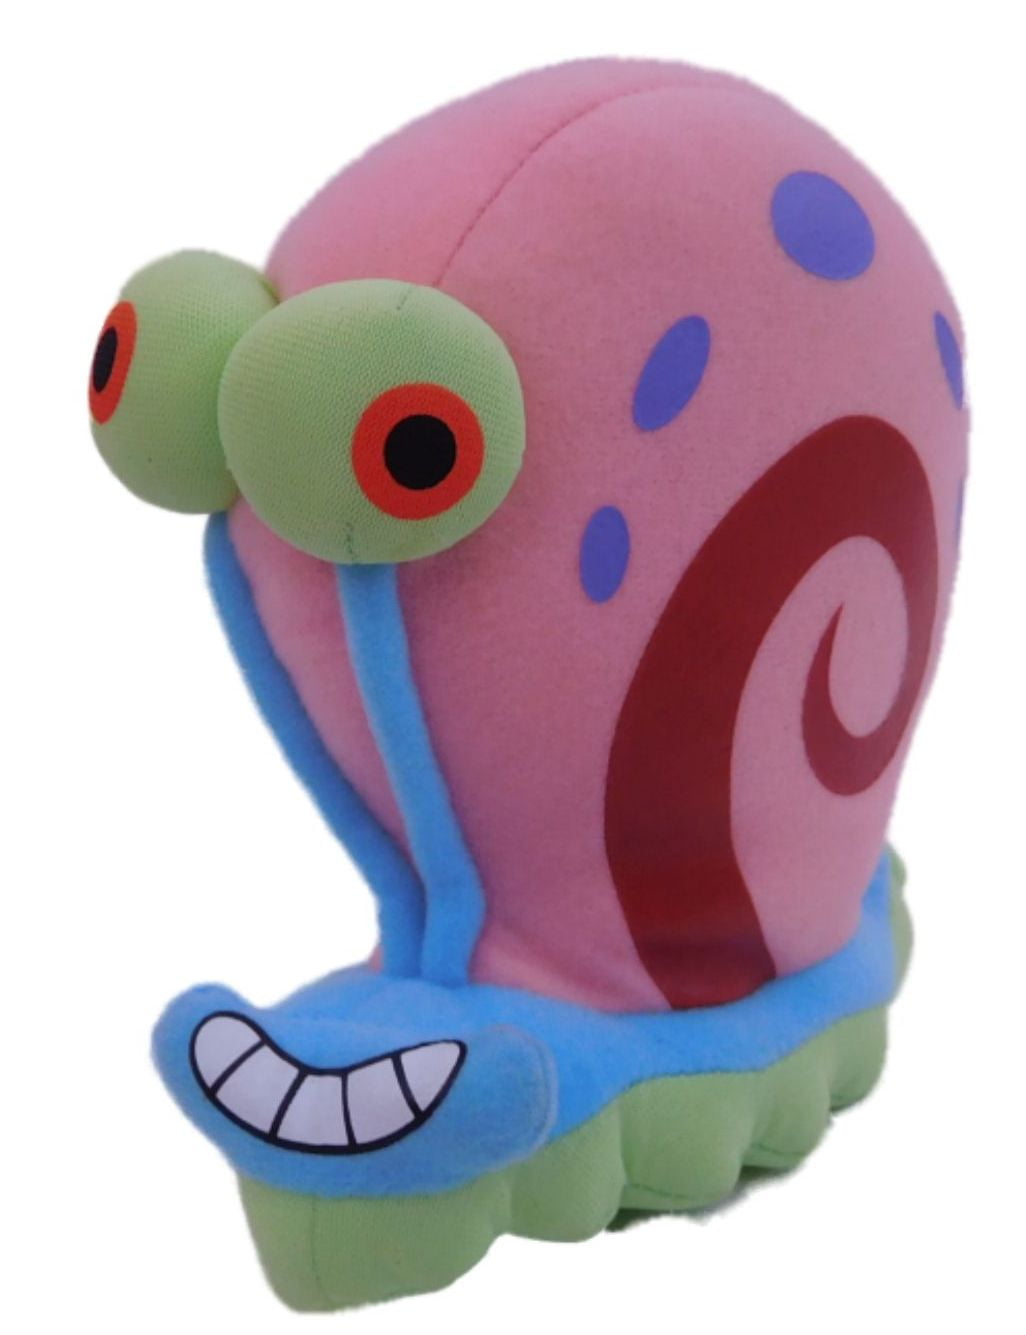 snail plush toy